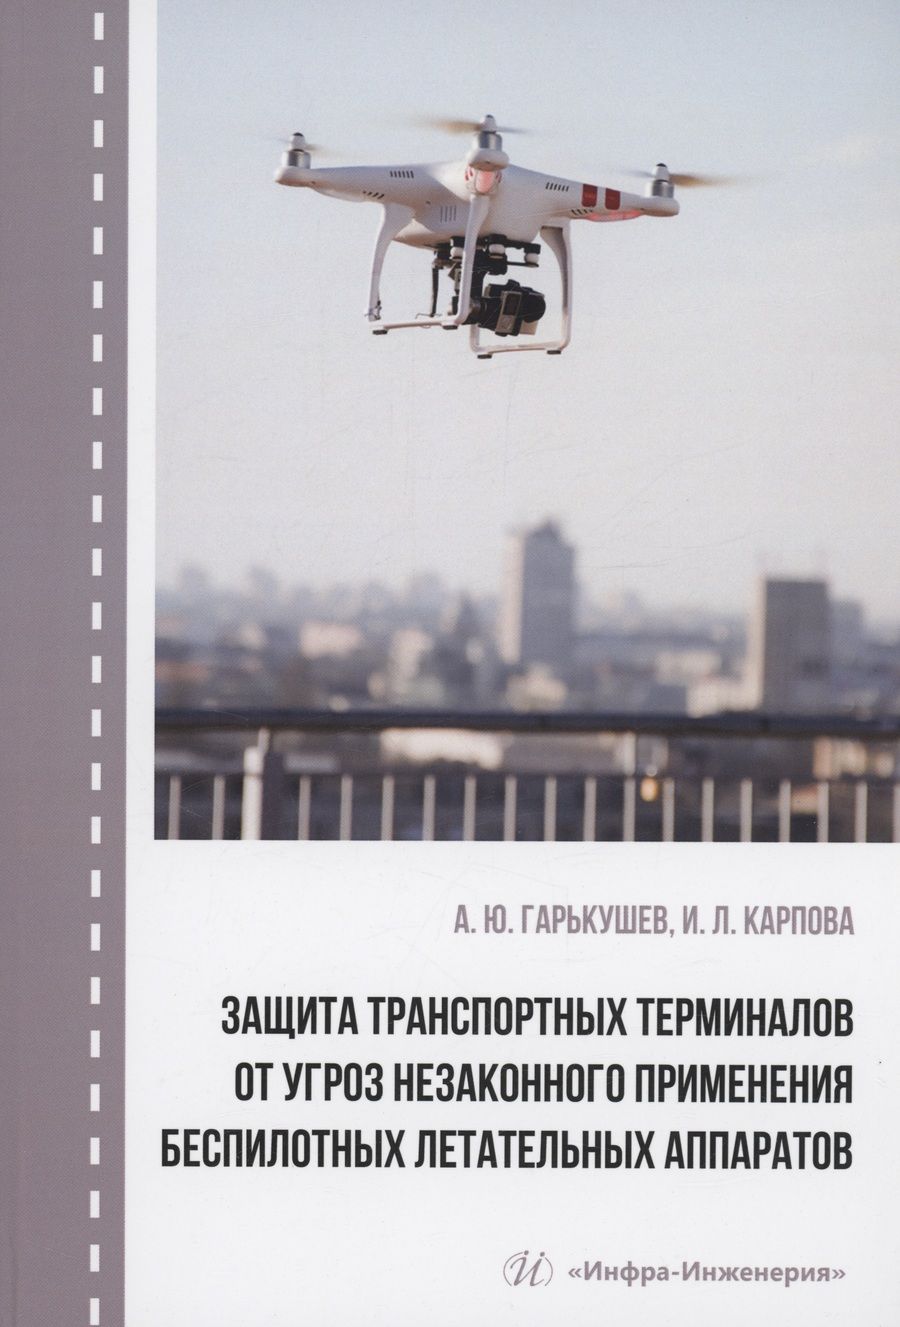 Обложка книги "Гарькушев, Карпова: Защита транспортных терминалов от угроз незаконного применения беспилотных летательных аппаратов"